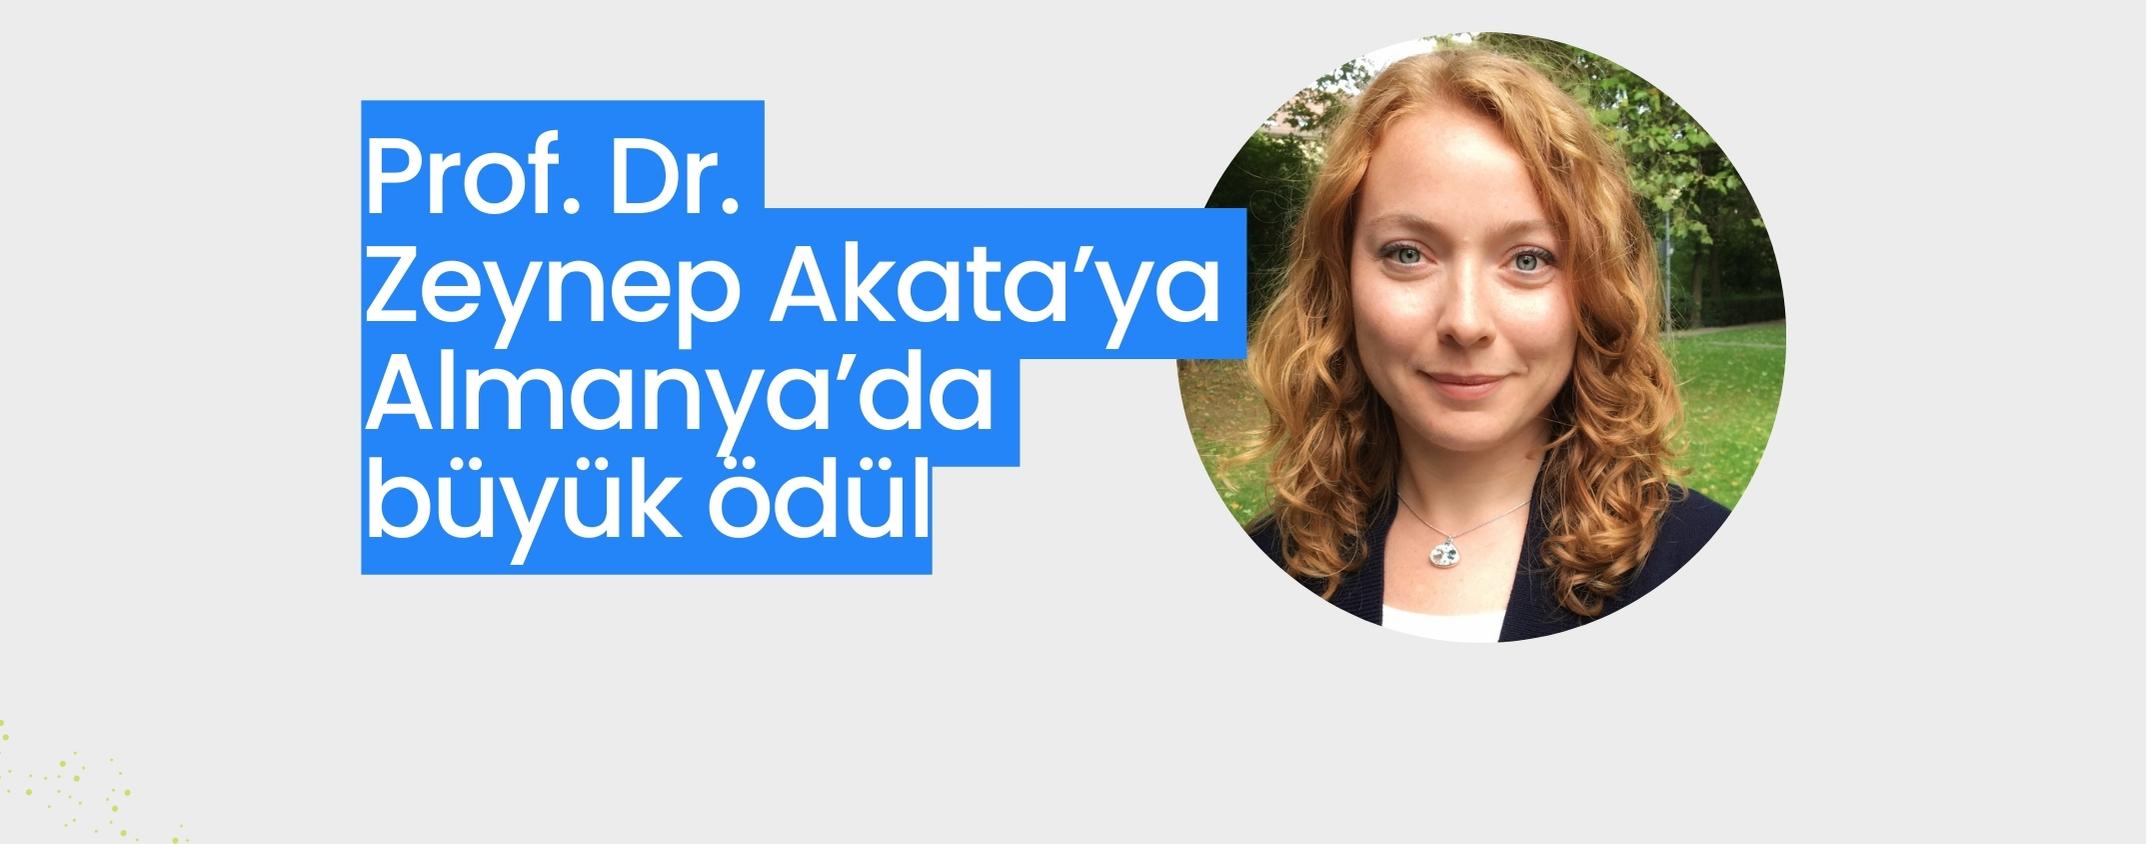 Prof. Dr. Zeynep Akata’ya Almanya’da büyük ödül